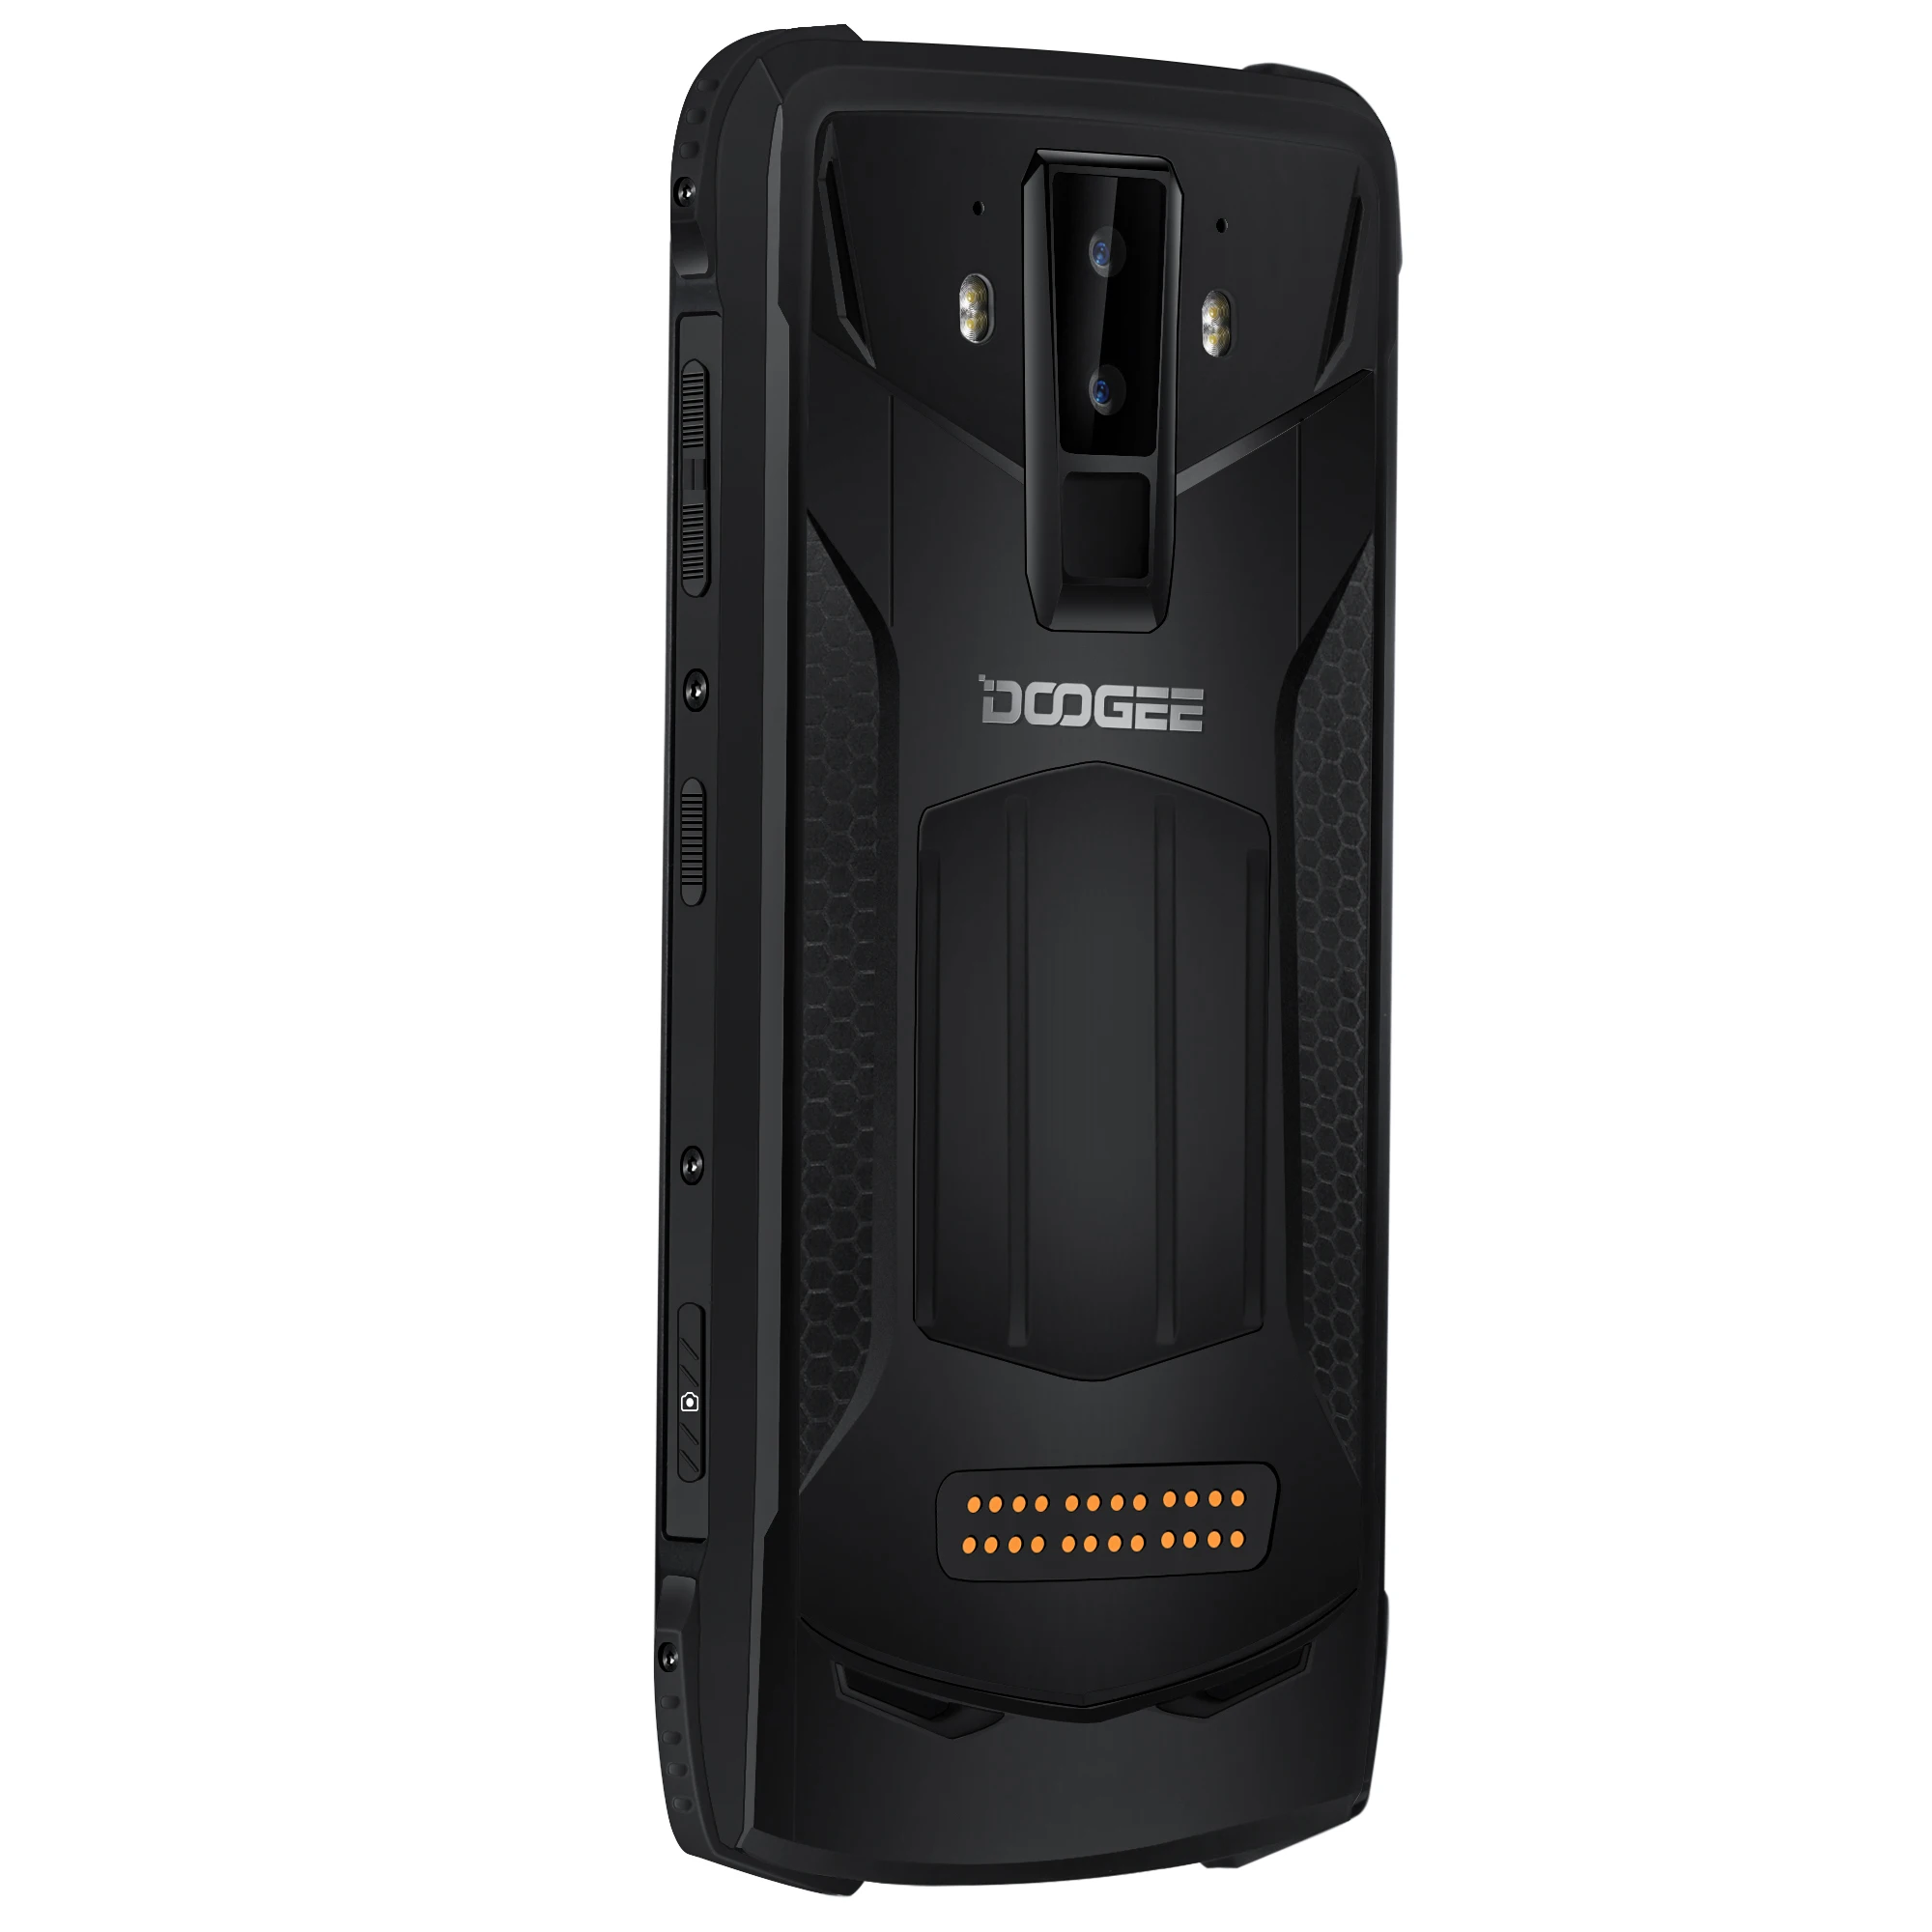 DOOGEE S90C модульный смартфон Helio P70 Восьмиядерный NFC 6,18 FHD+ дисплей IP68/IP69K 4 Гб 64 Гб 16 МП камера 4G мобильный телефон